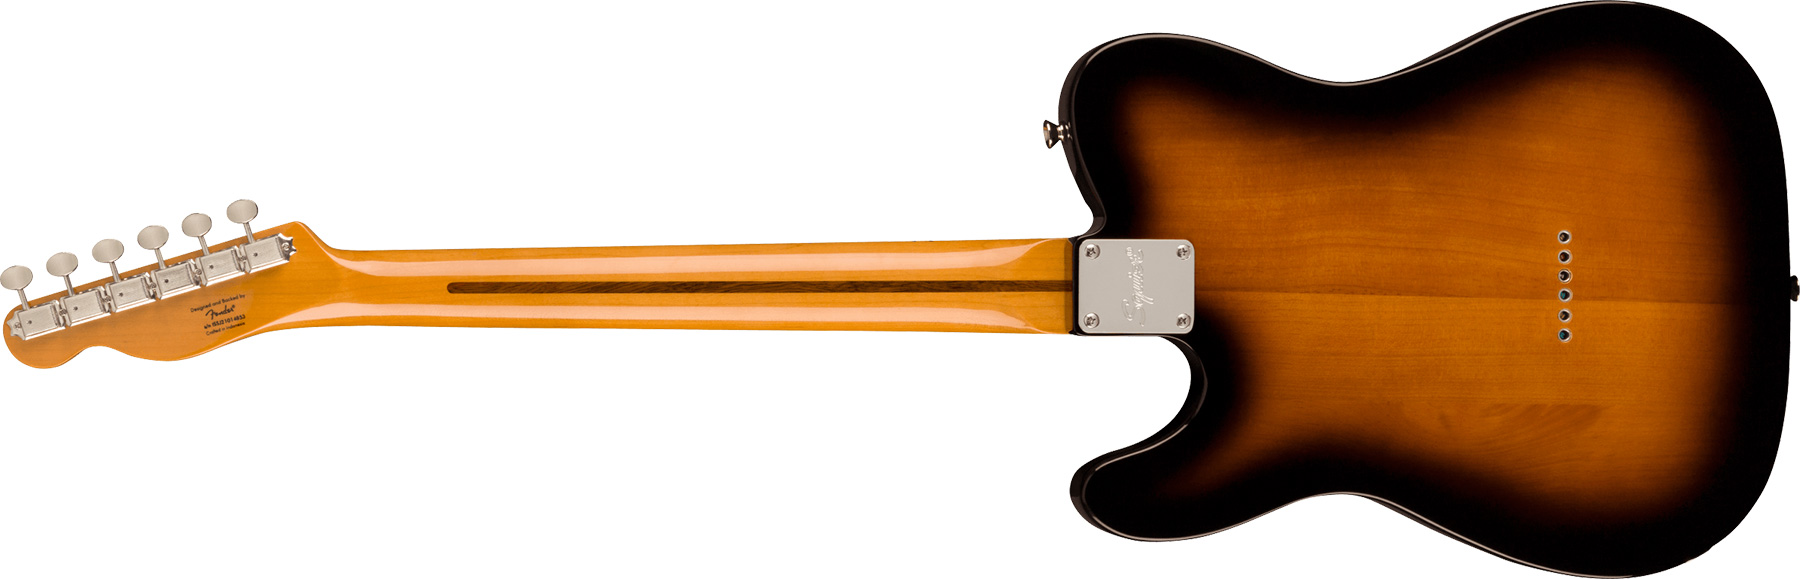 Squier Tele '50s Parchment Pickguard Classic Vibe Fsr 2s Ht Mn - 2-color Sunburst - Tel shape electric guitar - Variation 1